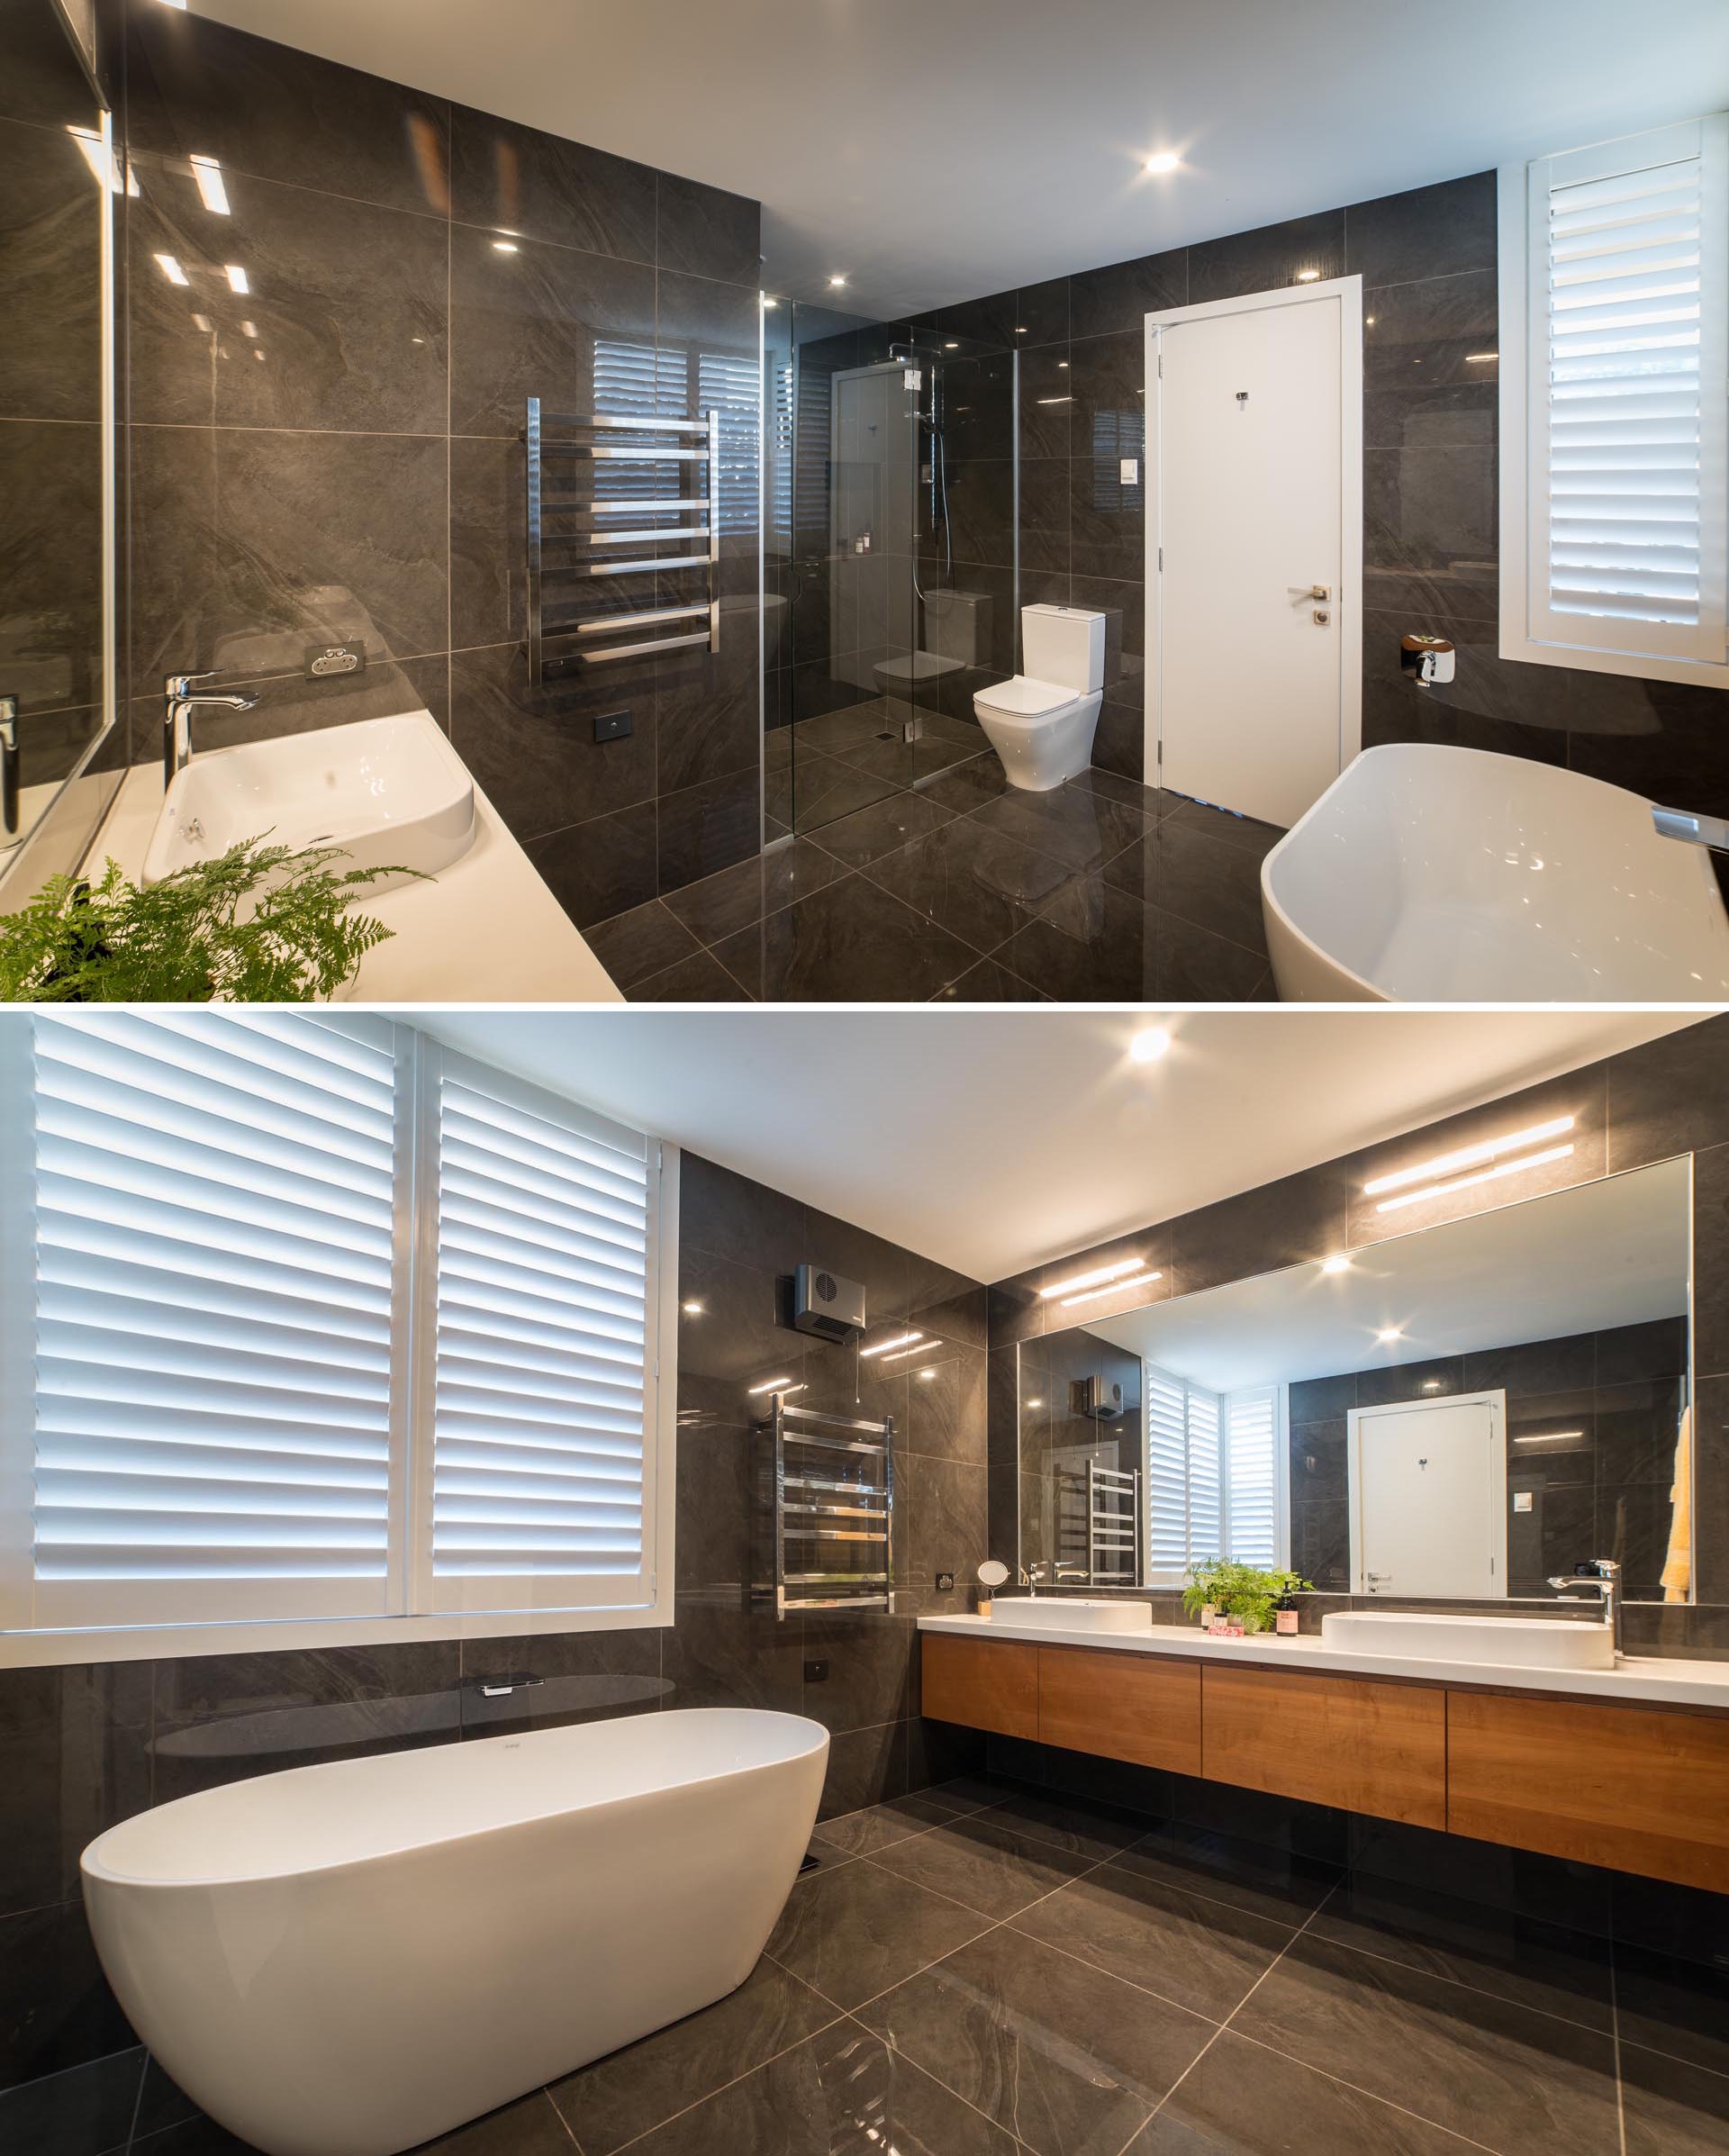 Современная главная ванная комната с крупноформатной плиткой темного цвета, покрывающей стены и пол, а также белая отдельно стоящая ванна и столешница, которые создают контрастный элемент.